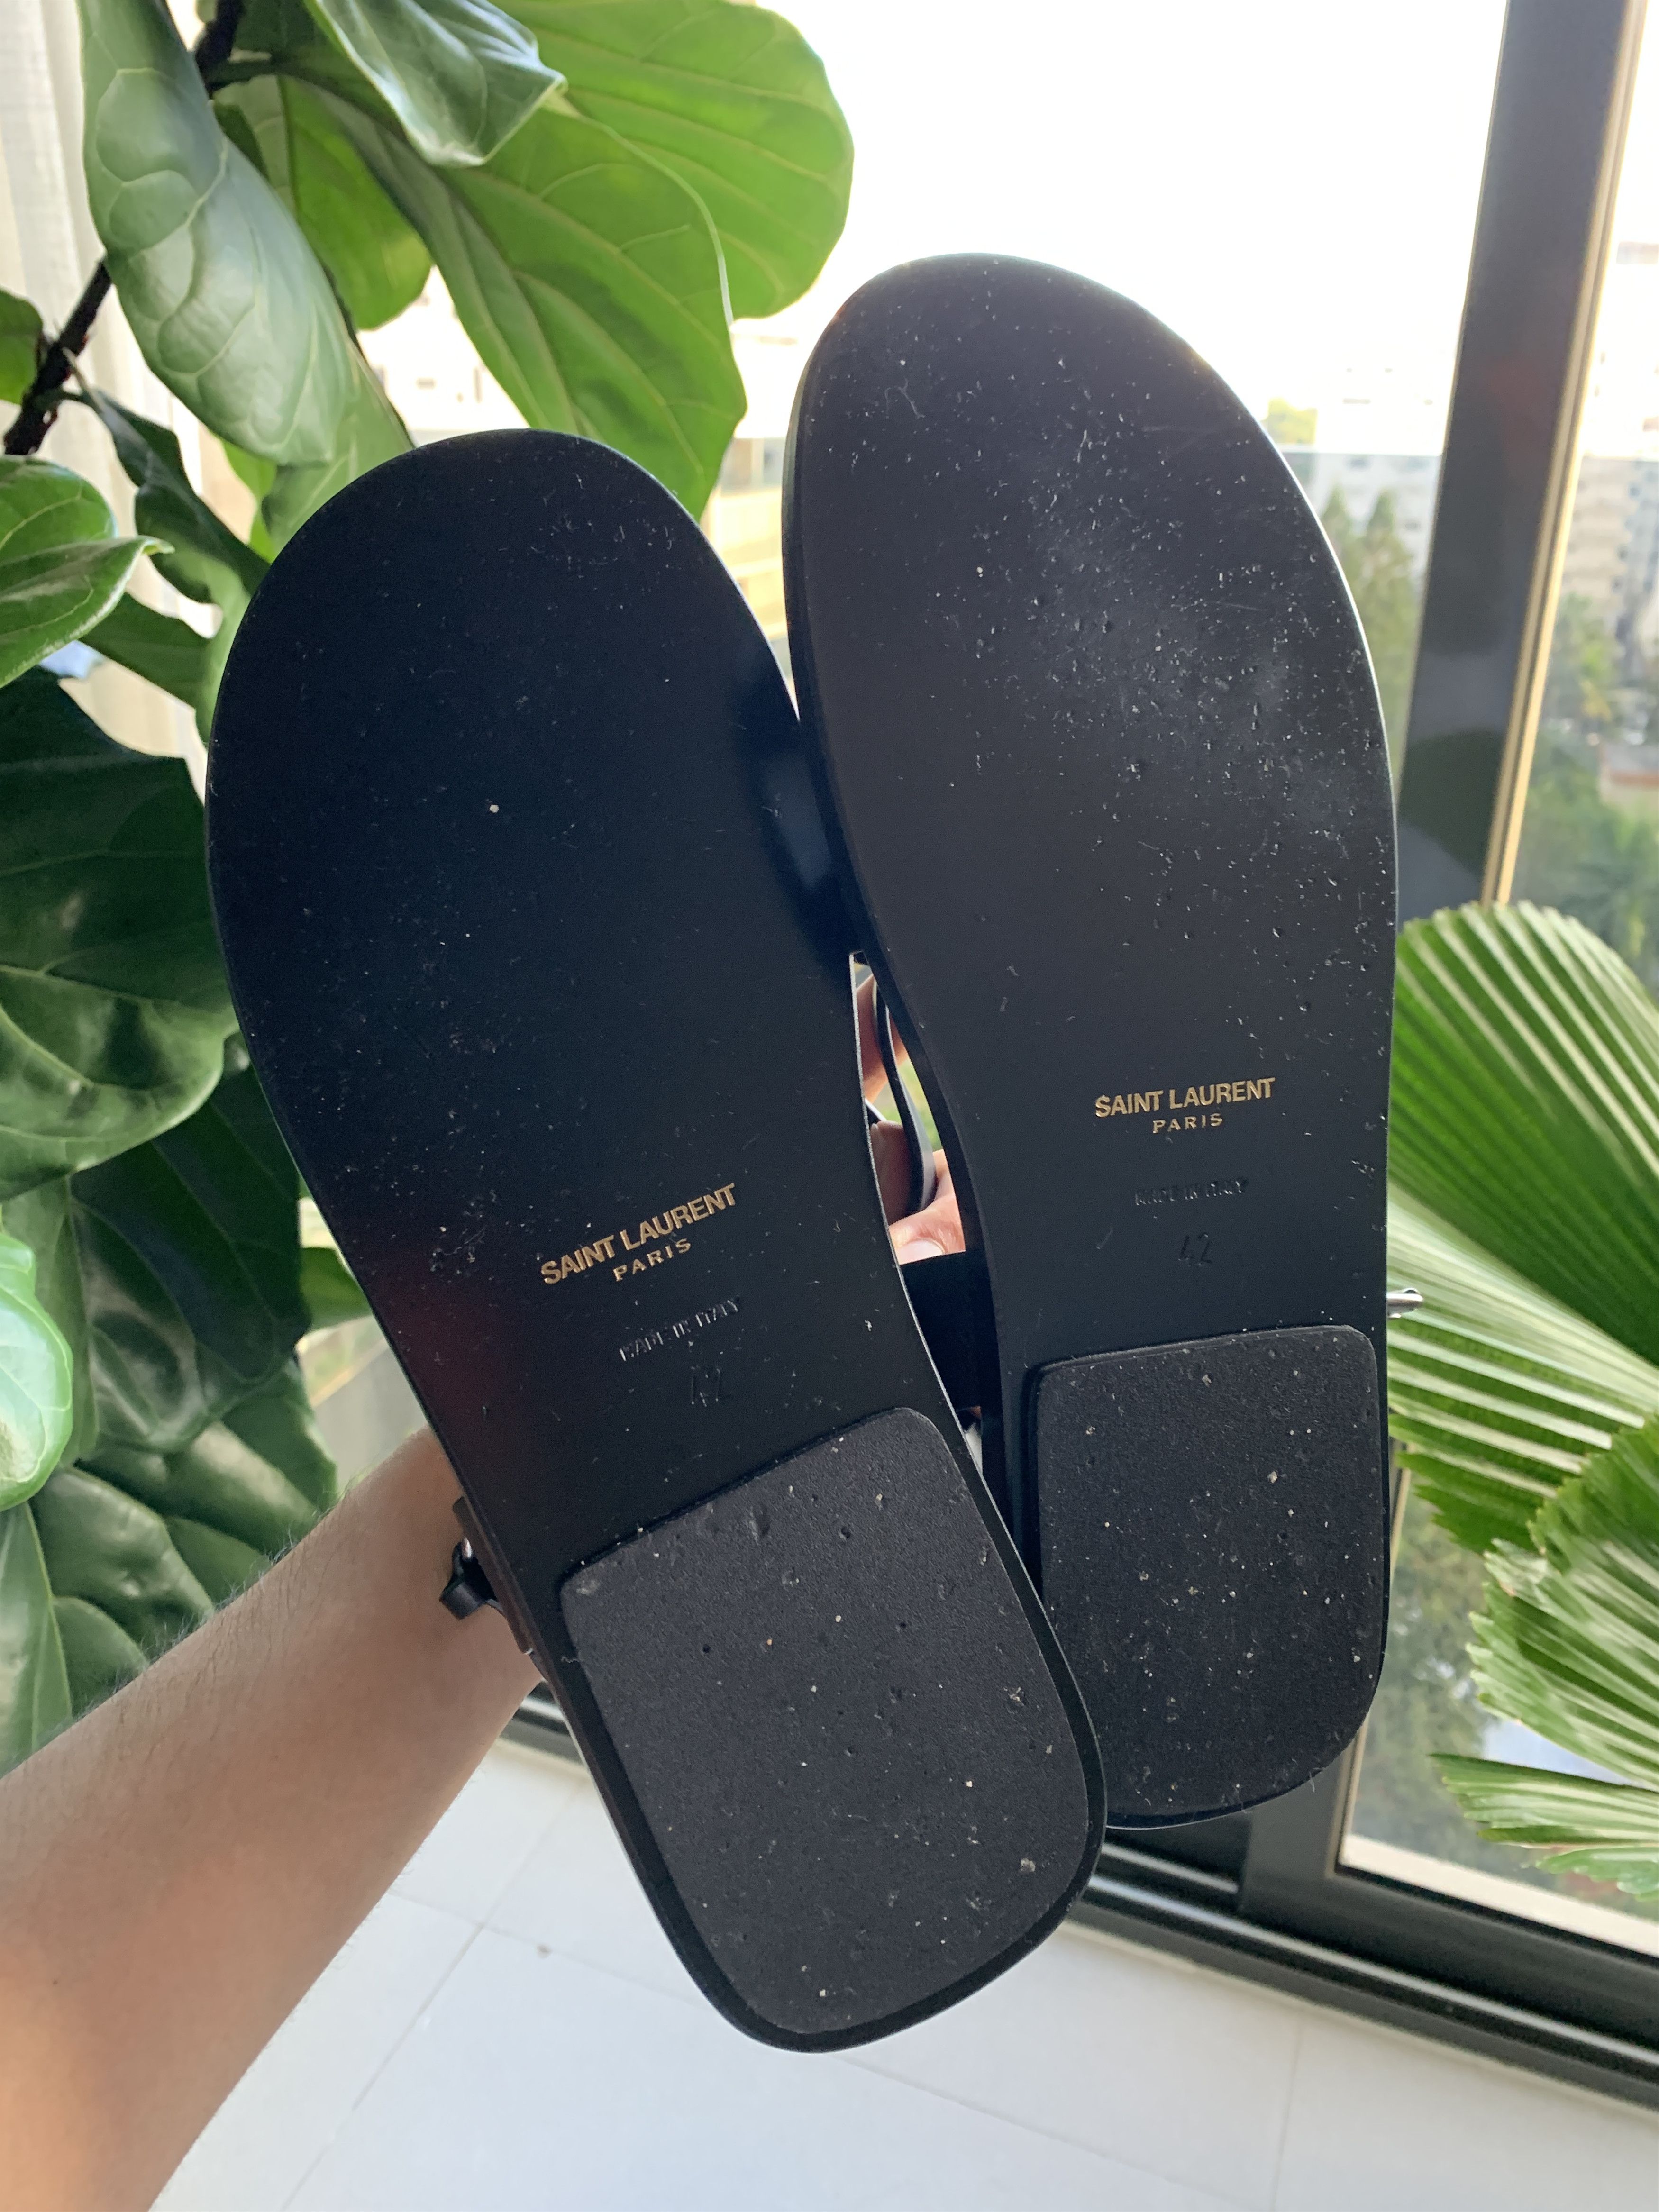 Saint Laurent Paris Leather Strap Sandals Size US 9 / EU 42 - 3 Thumbnail